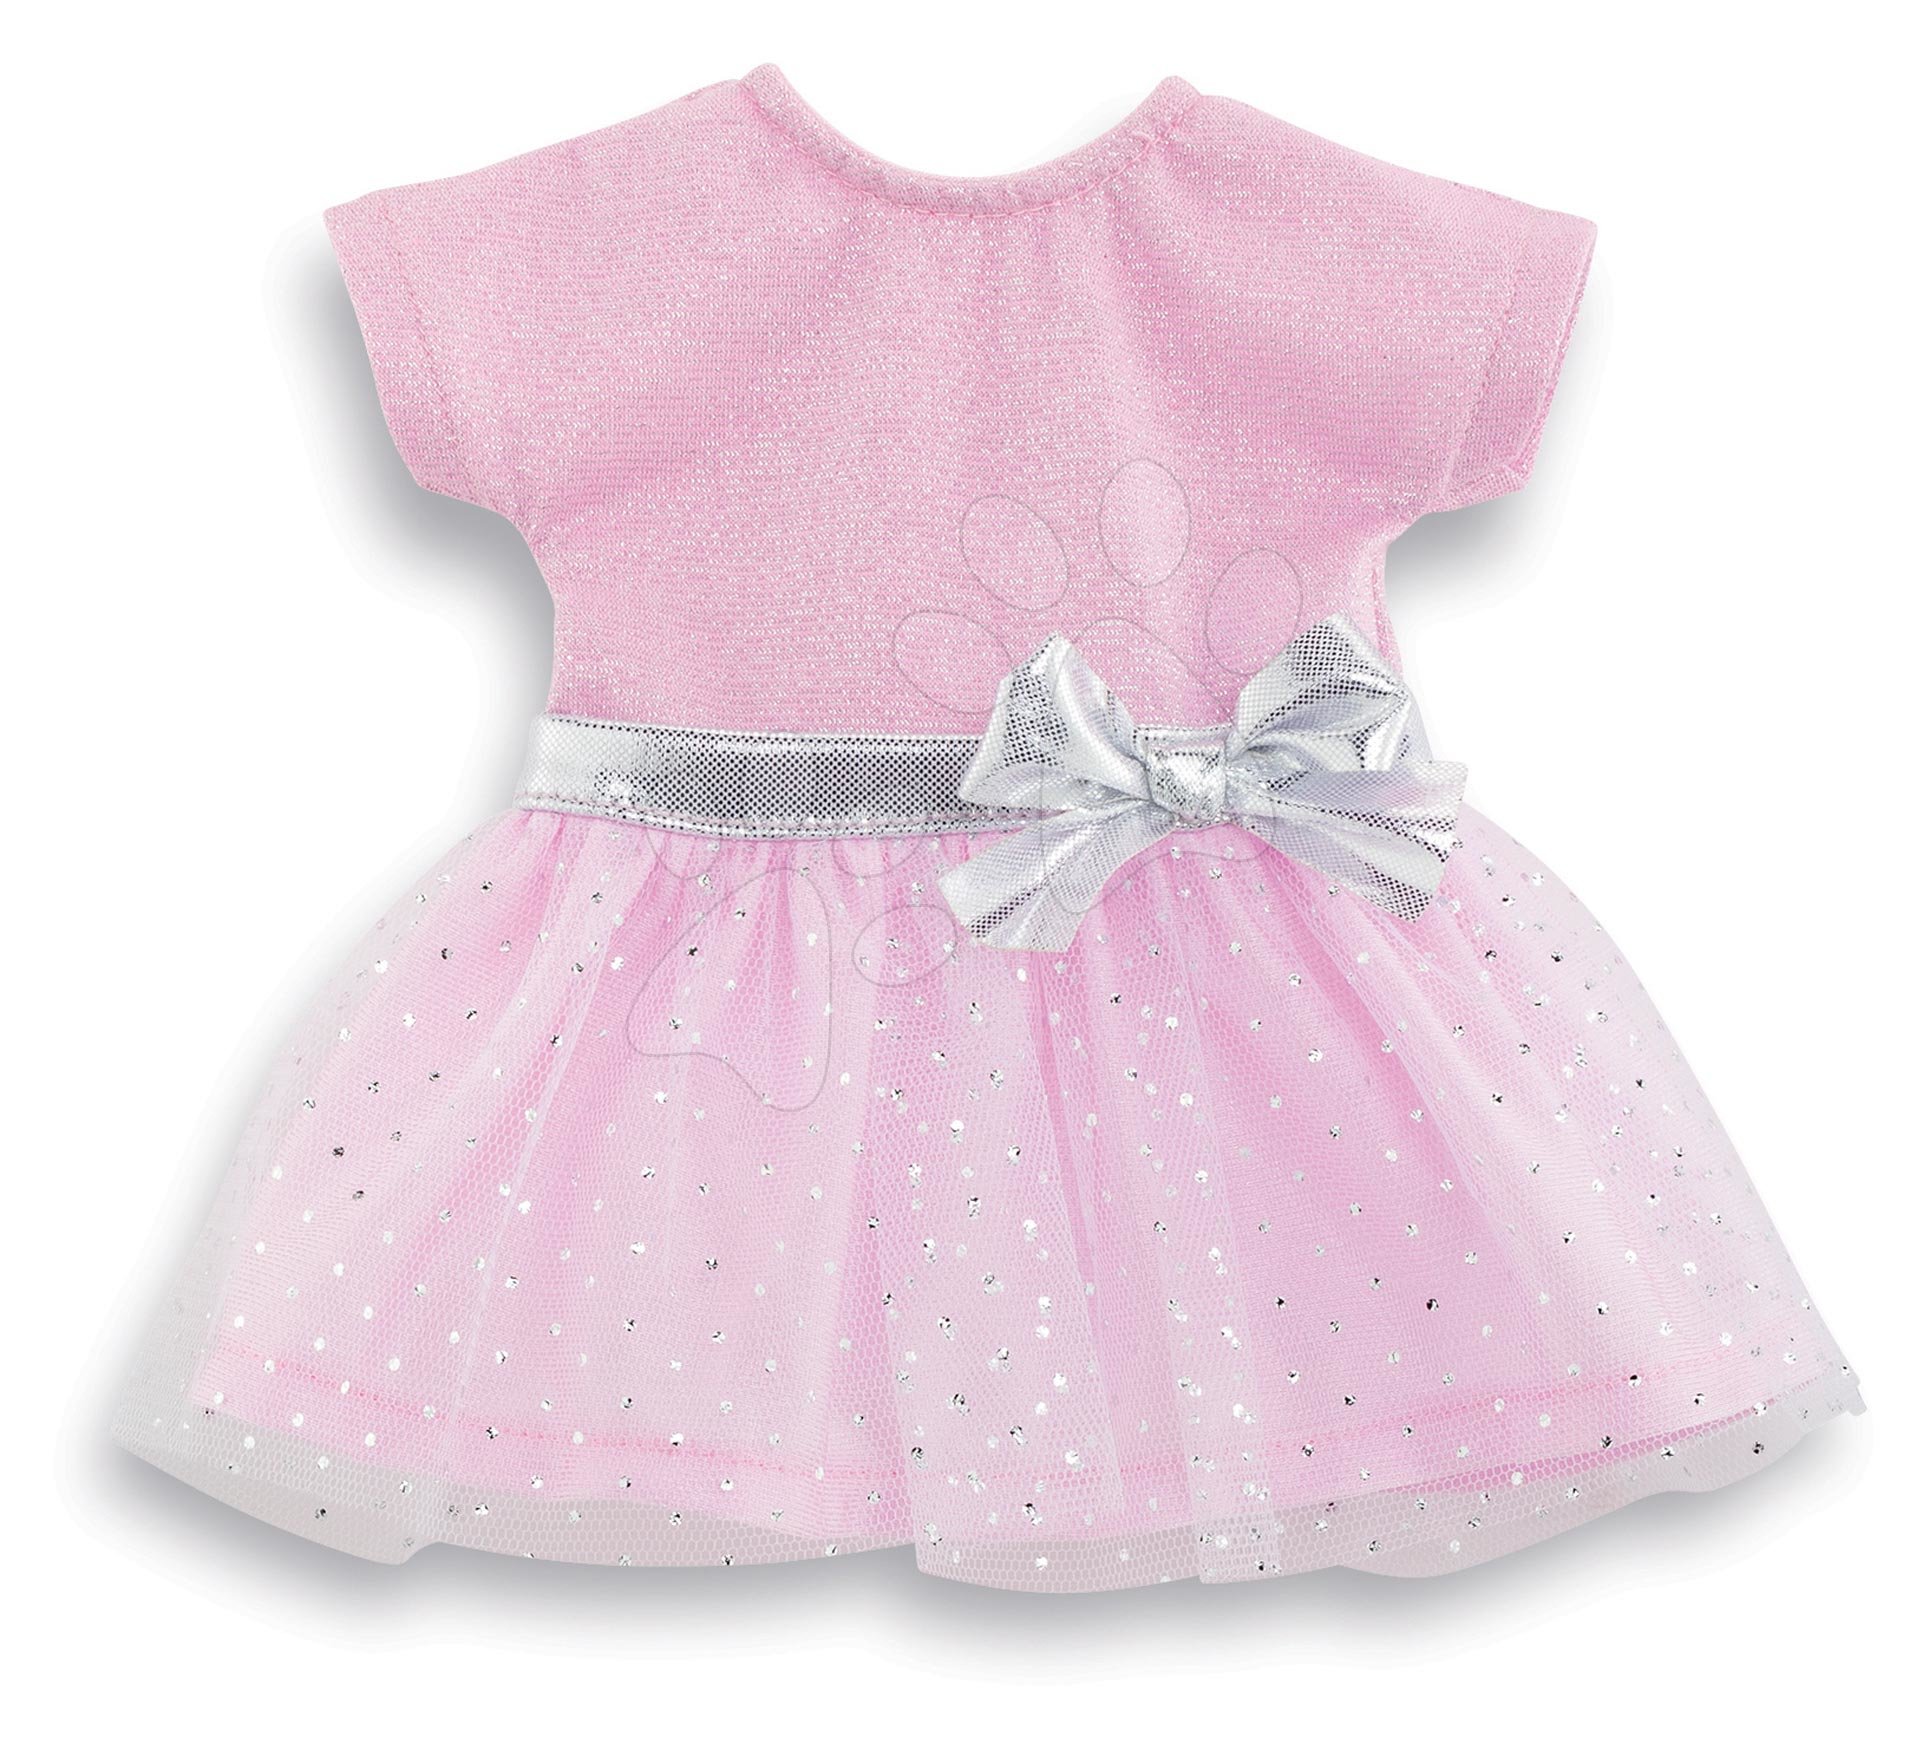 Oblečenie Party Dress Pink Ma Corolle pre 36 cm bábiku od 4 rokov